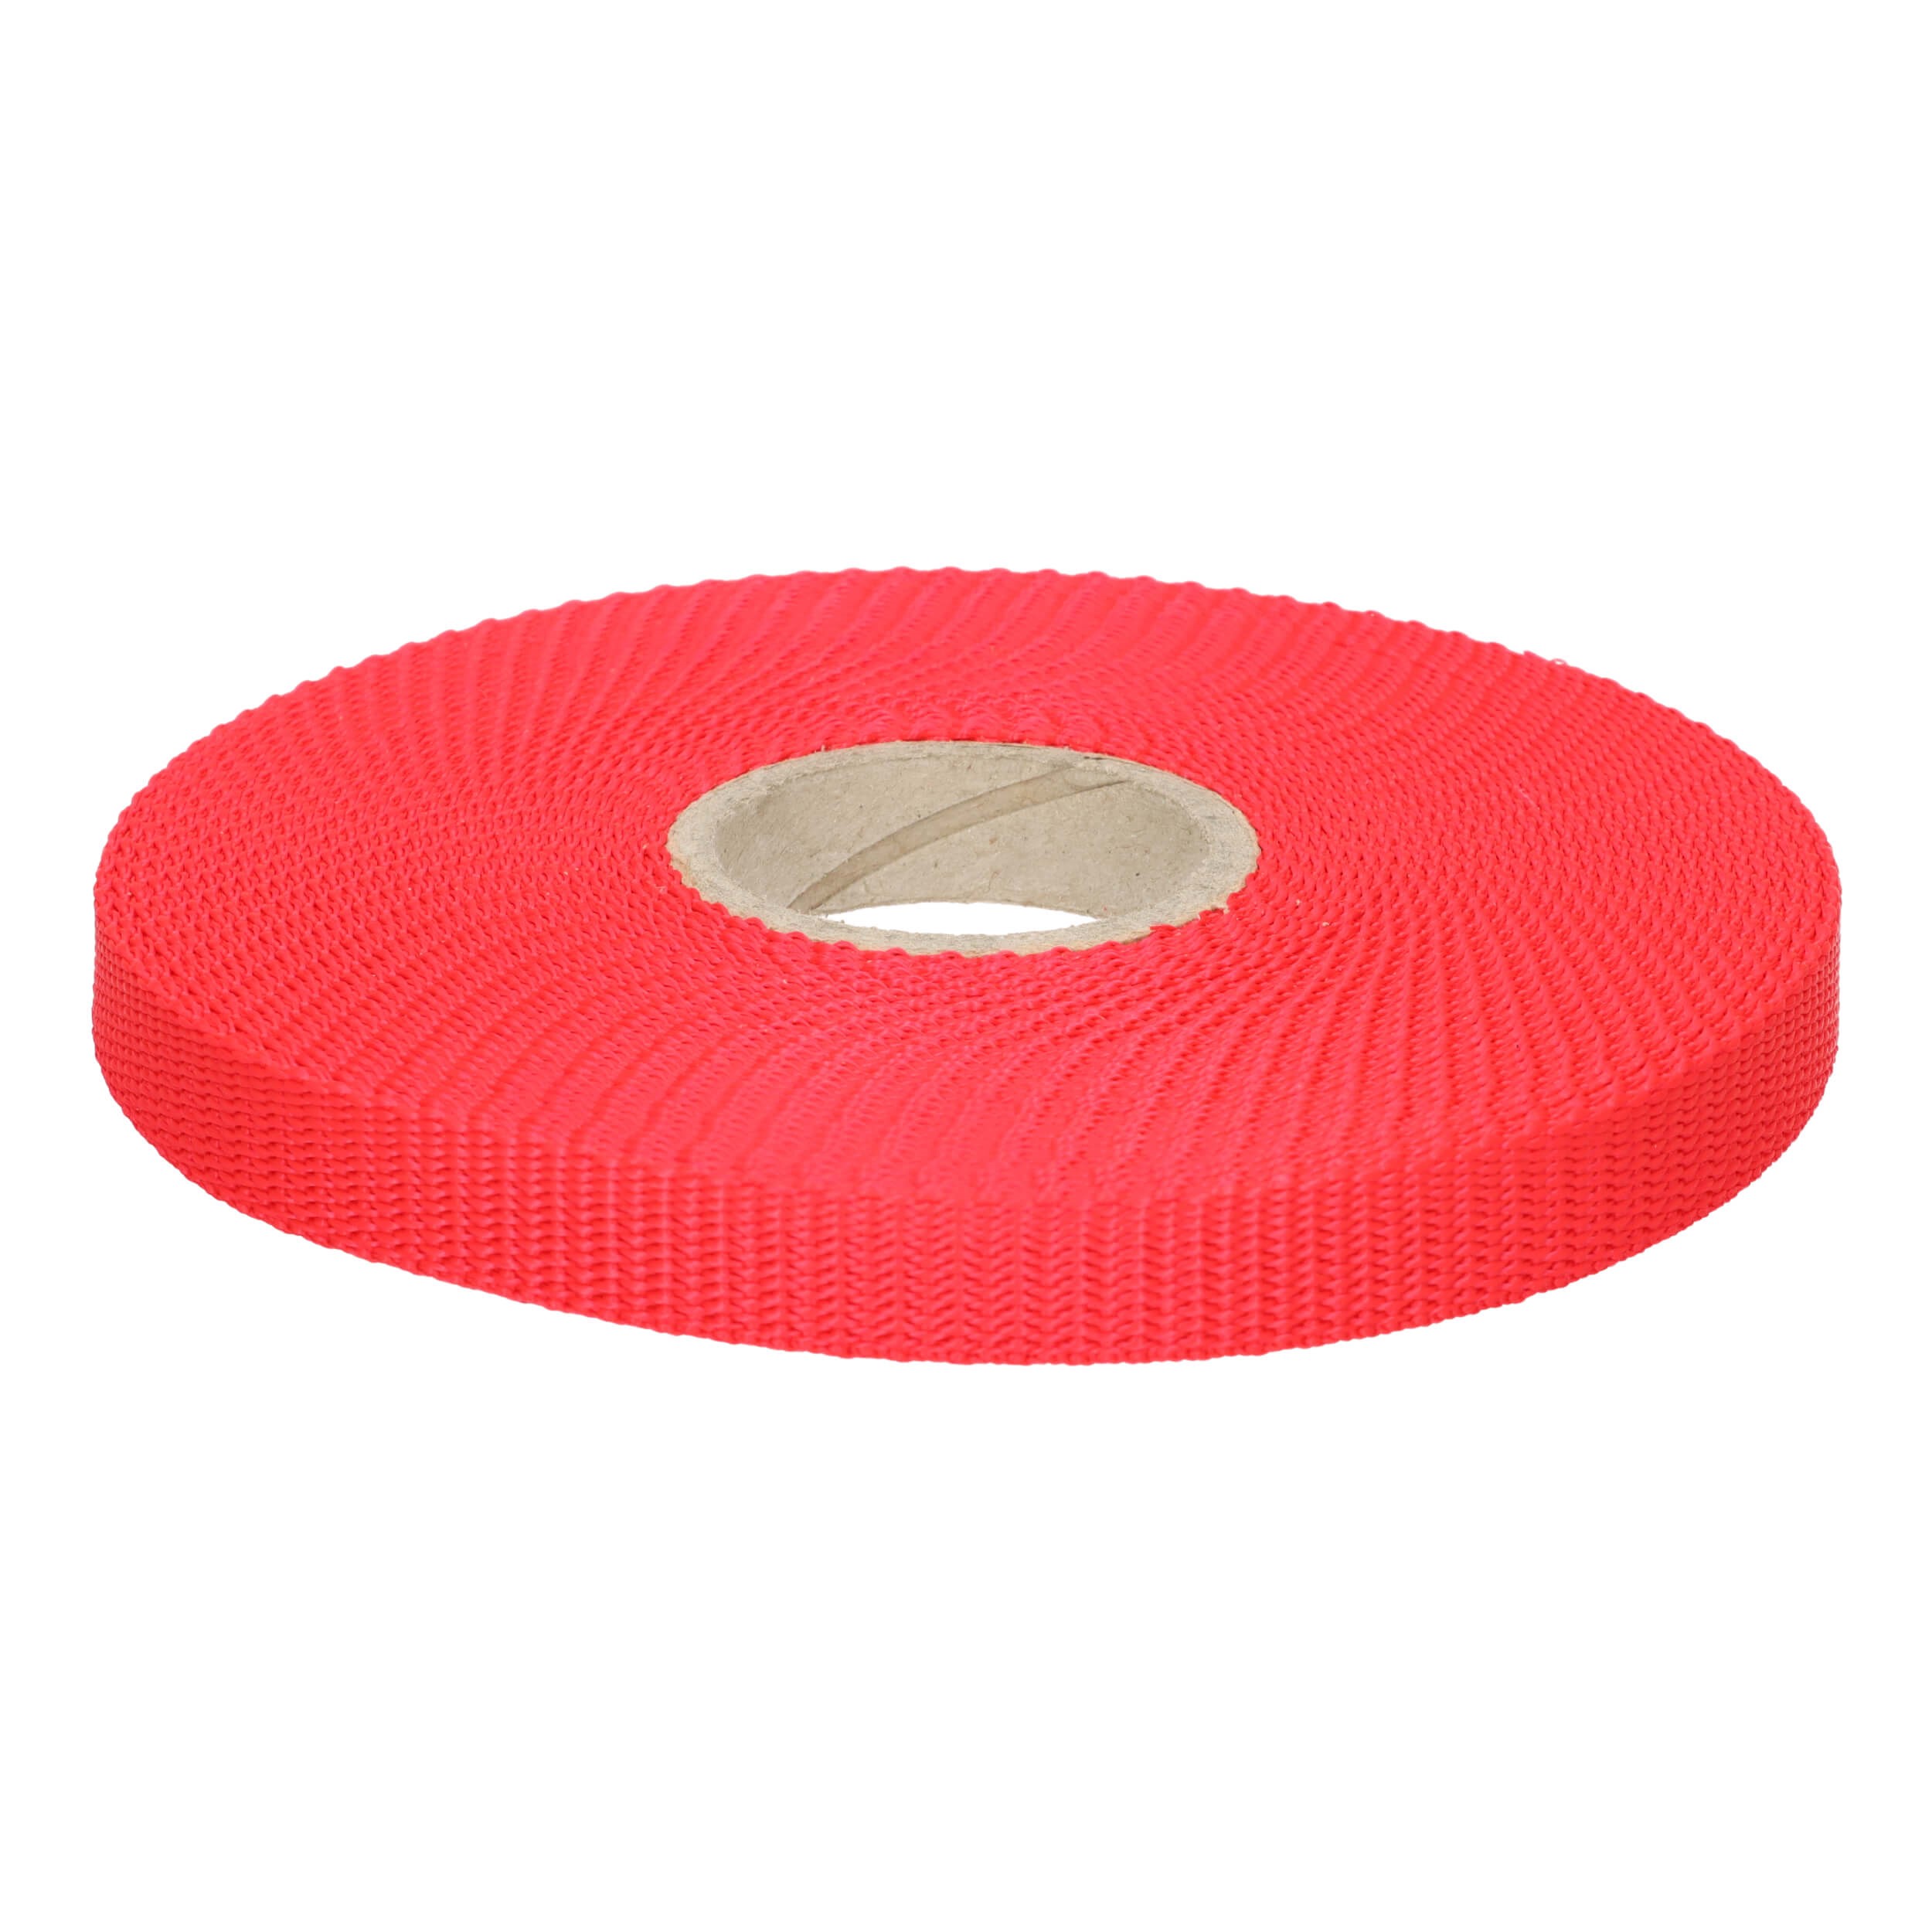 Gurtband 15mm breit, 1,6mm stark PP Polypropylen Rot Reißfestigkeit: 200kg (5 Rollen a 10 Meter) Made in Germany